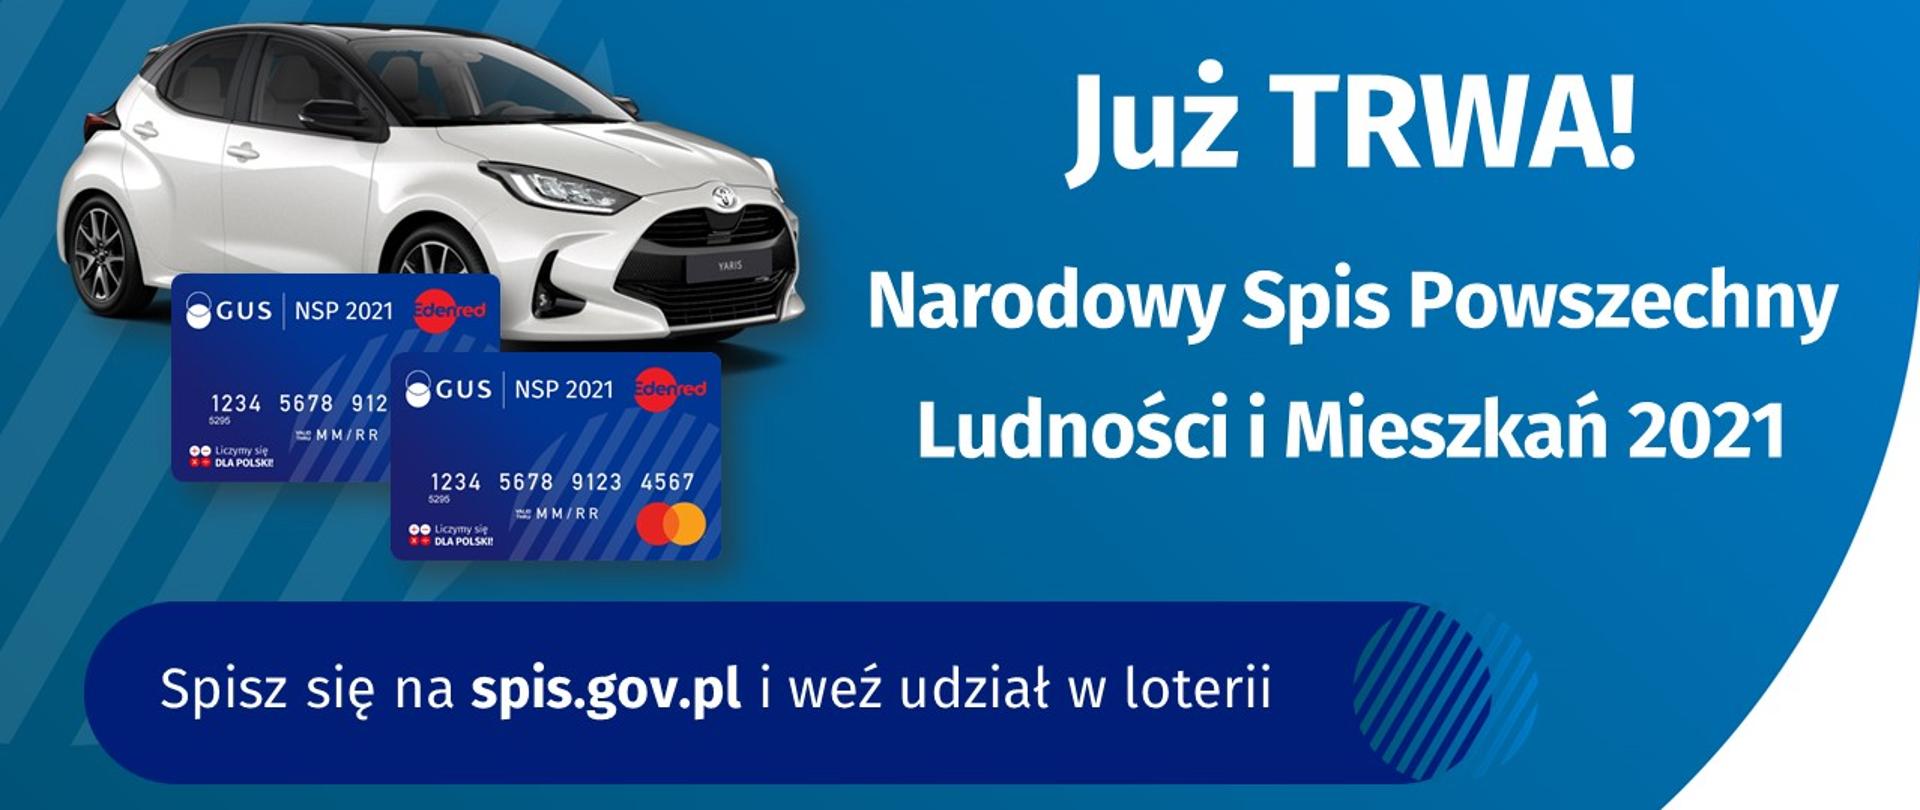 Na niebieskim tle znajduje się biały samochód marki toyota oraz dwie karty płatnicze w kolorze granatowym. Na plakacie znajduję się informacja o loterii, w której można wziąć udział po wcześniejszym spisaniu się na stronie www.spis.gov.pl.